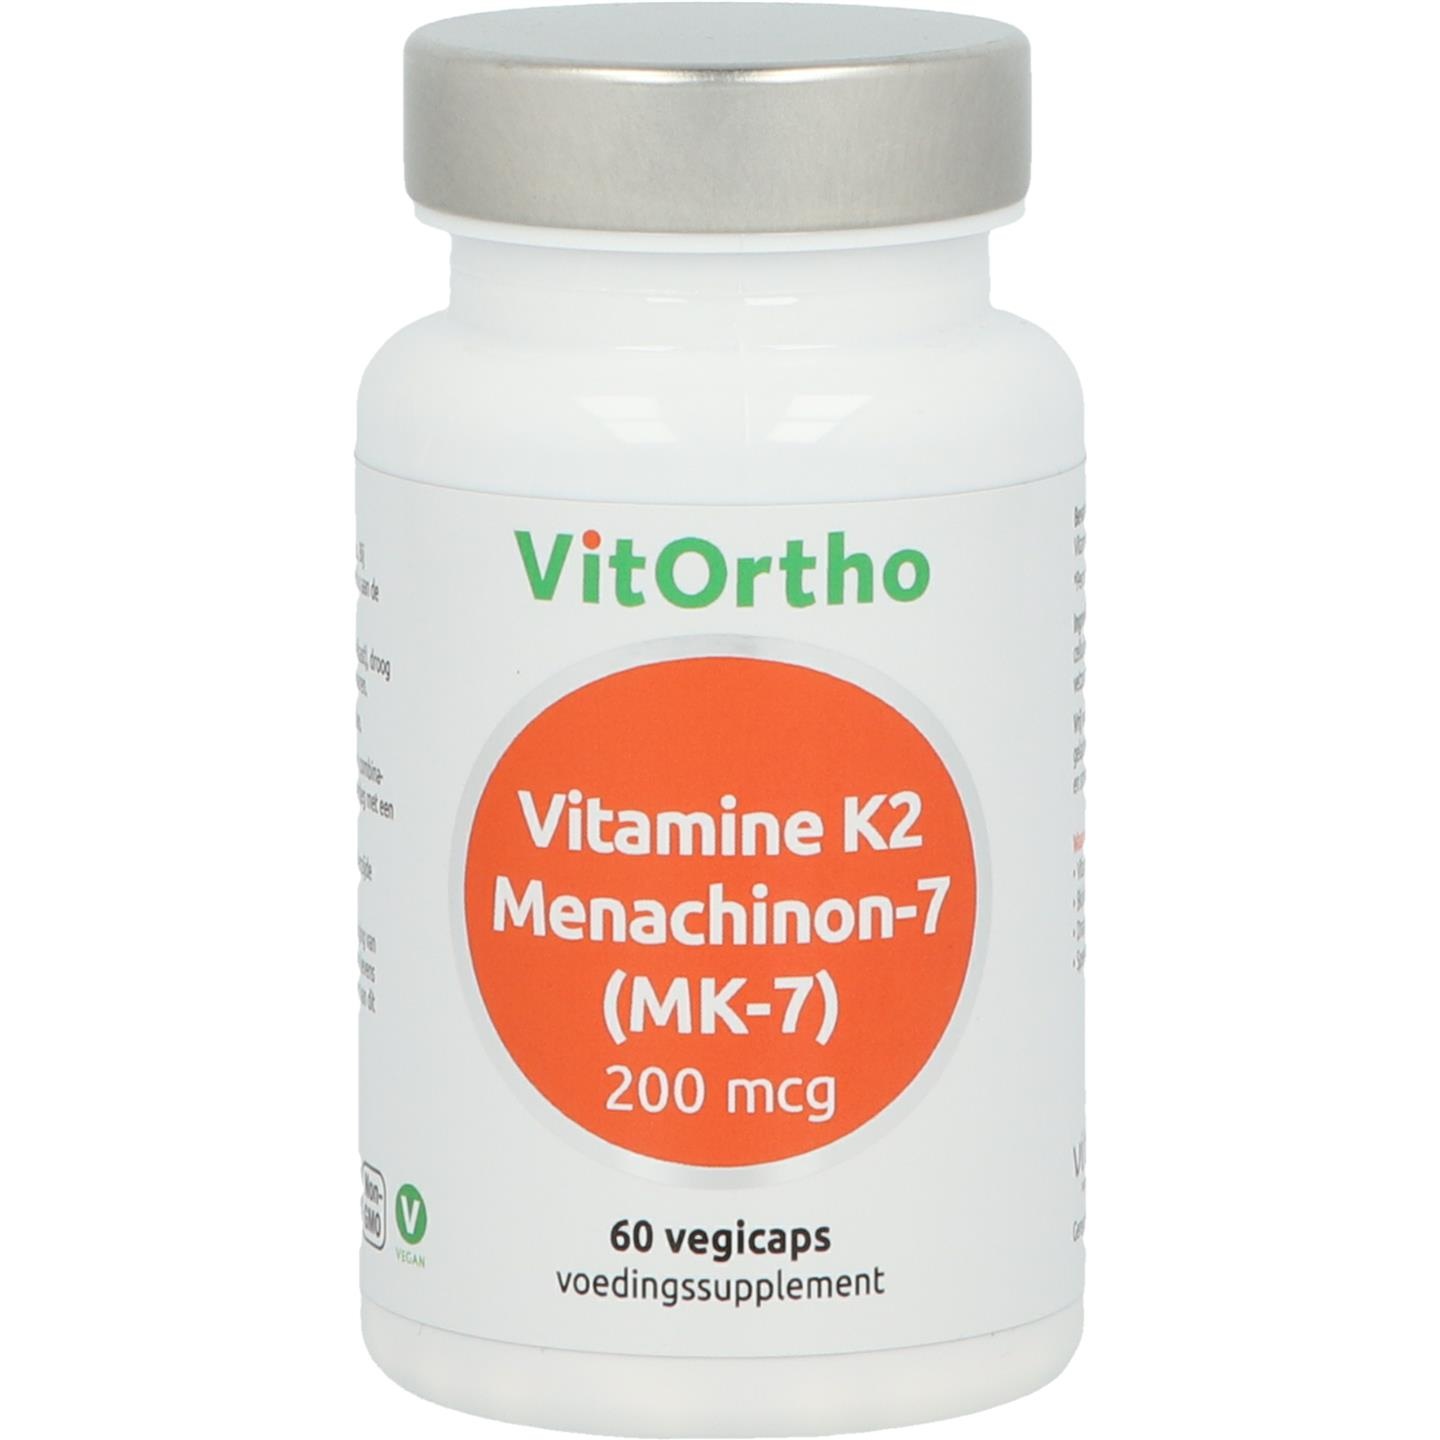 Vitortho VitOrtho Vitamin K2 Menachinon 7 200 mcg (60 vegetarische Kapseln)